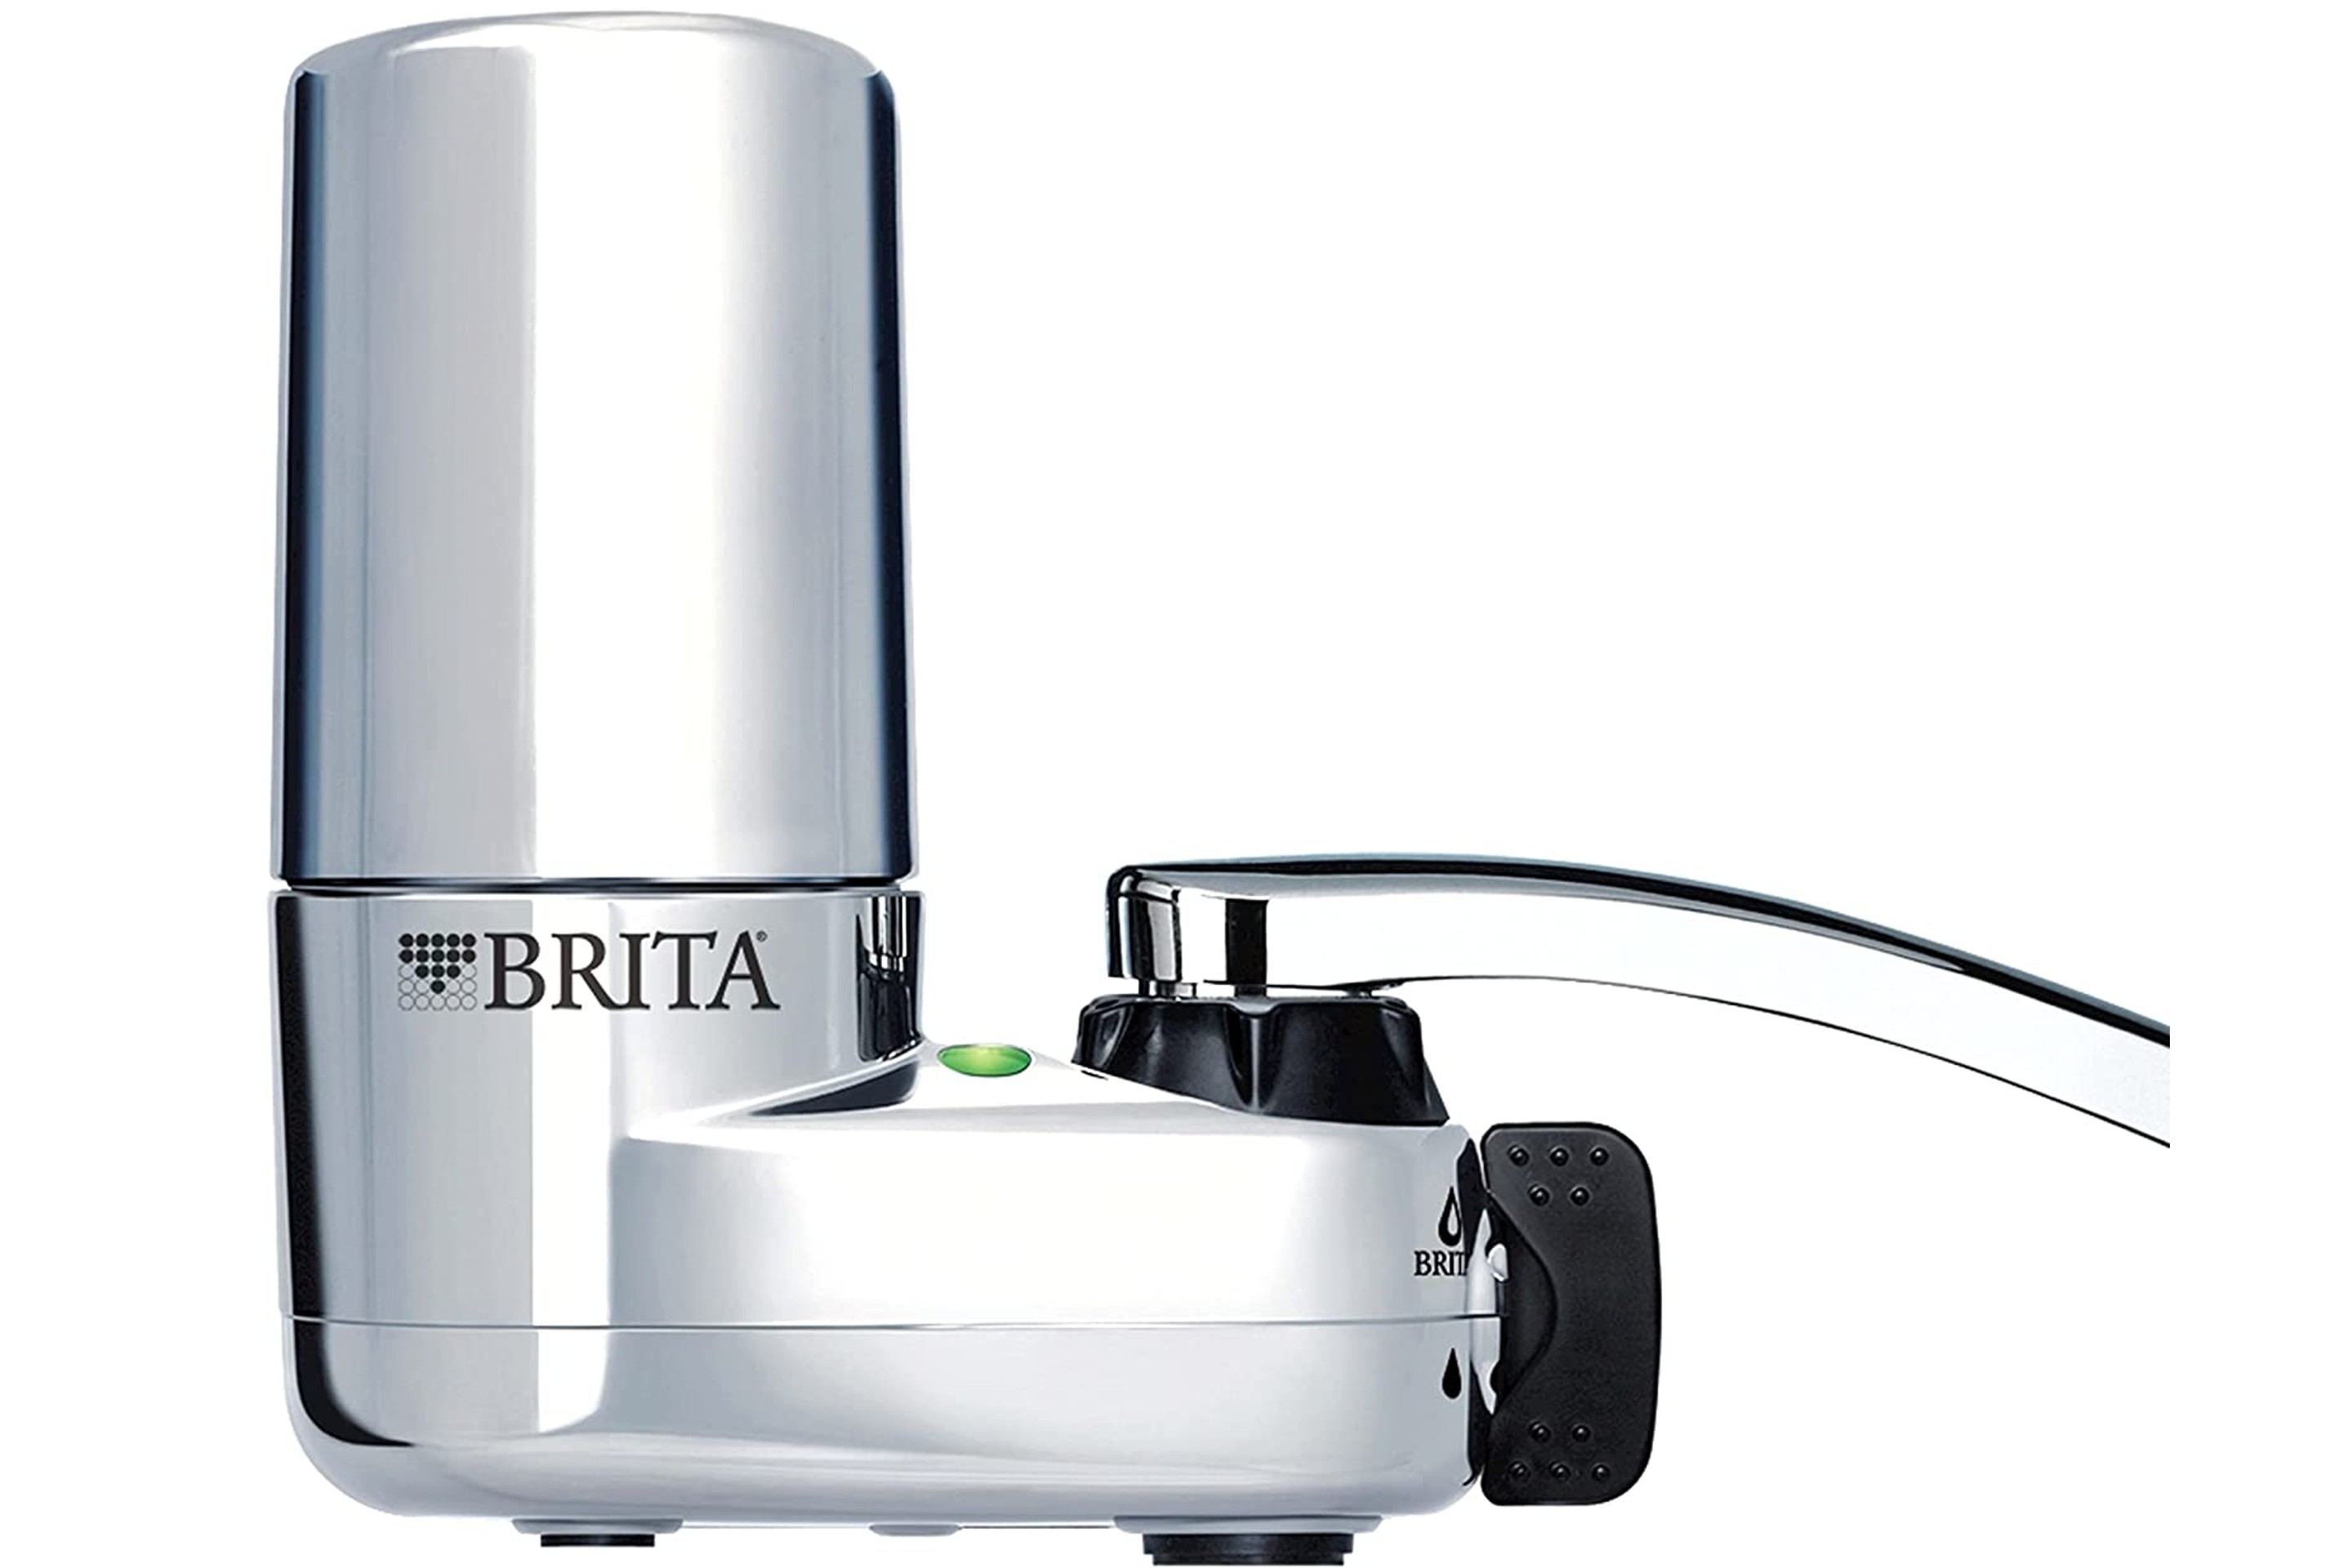 Brita Tap Water Filter System